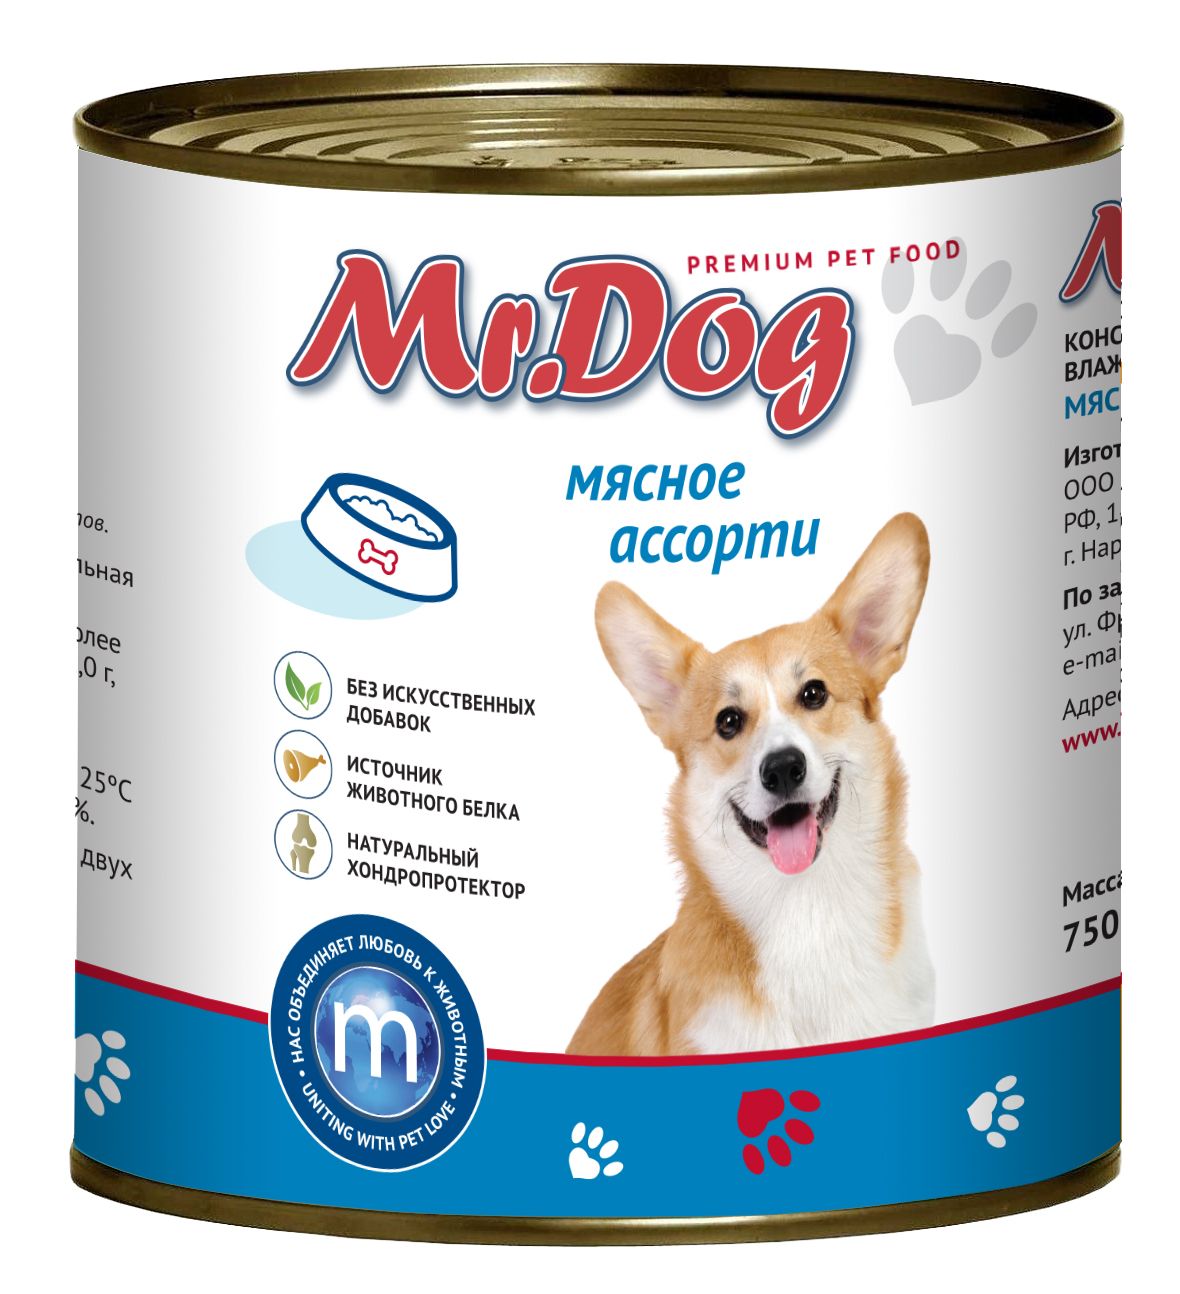 Mr.Dog Мясное ассорти консервы для собак 750 г 1